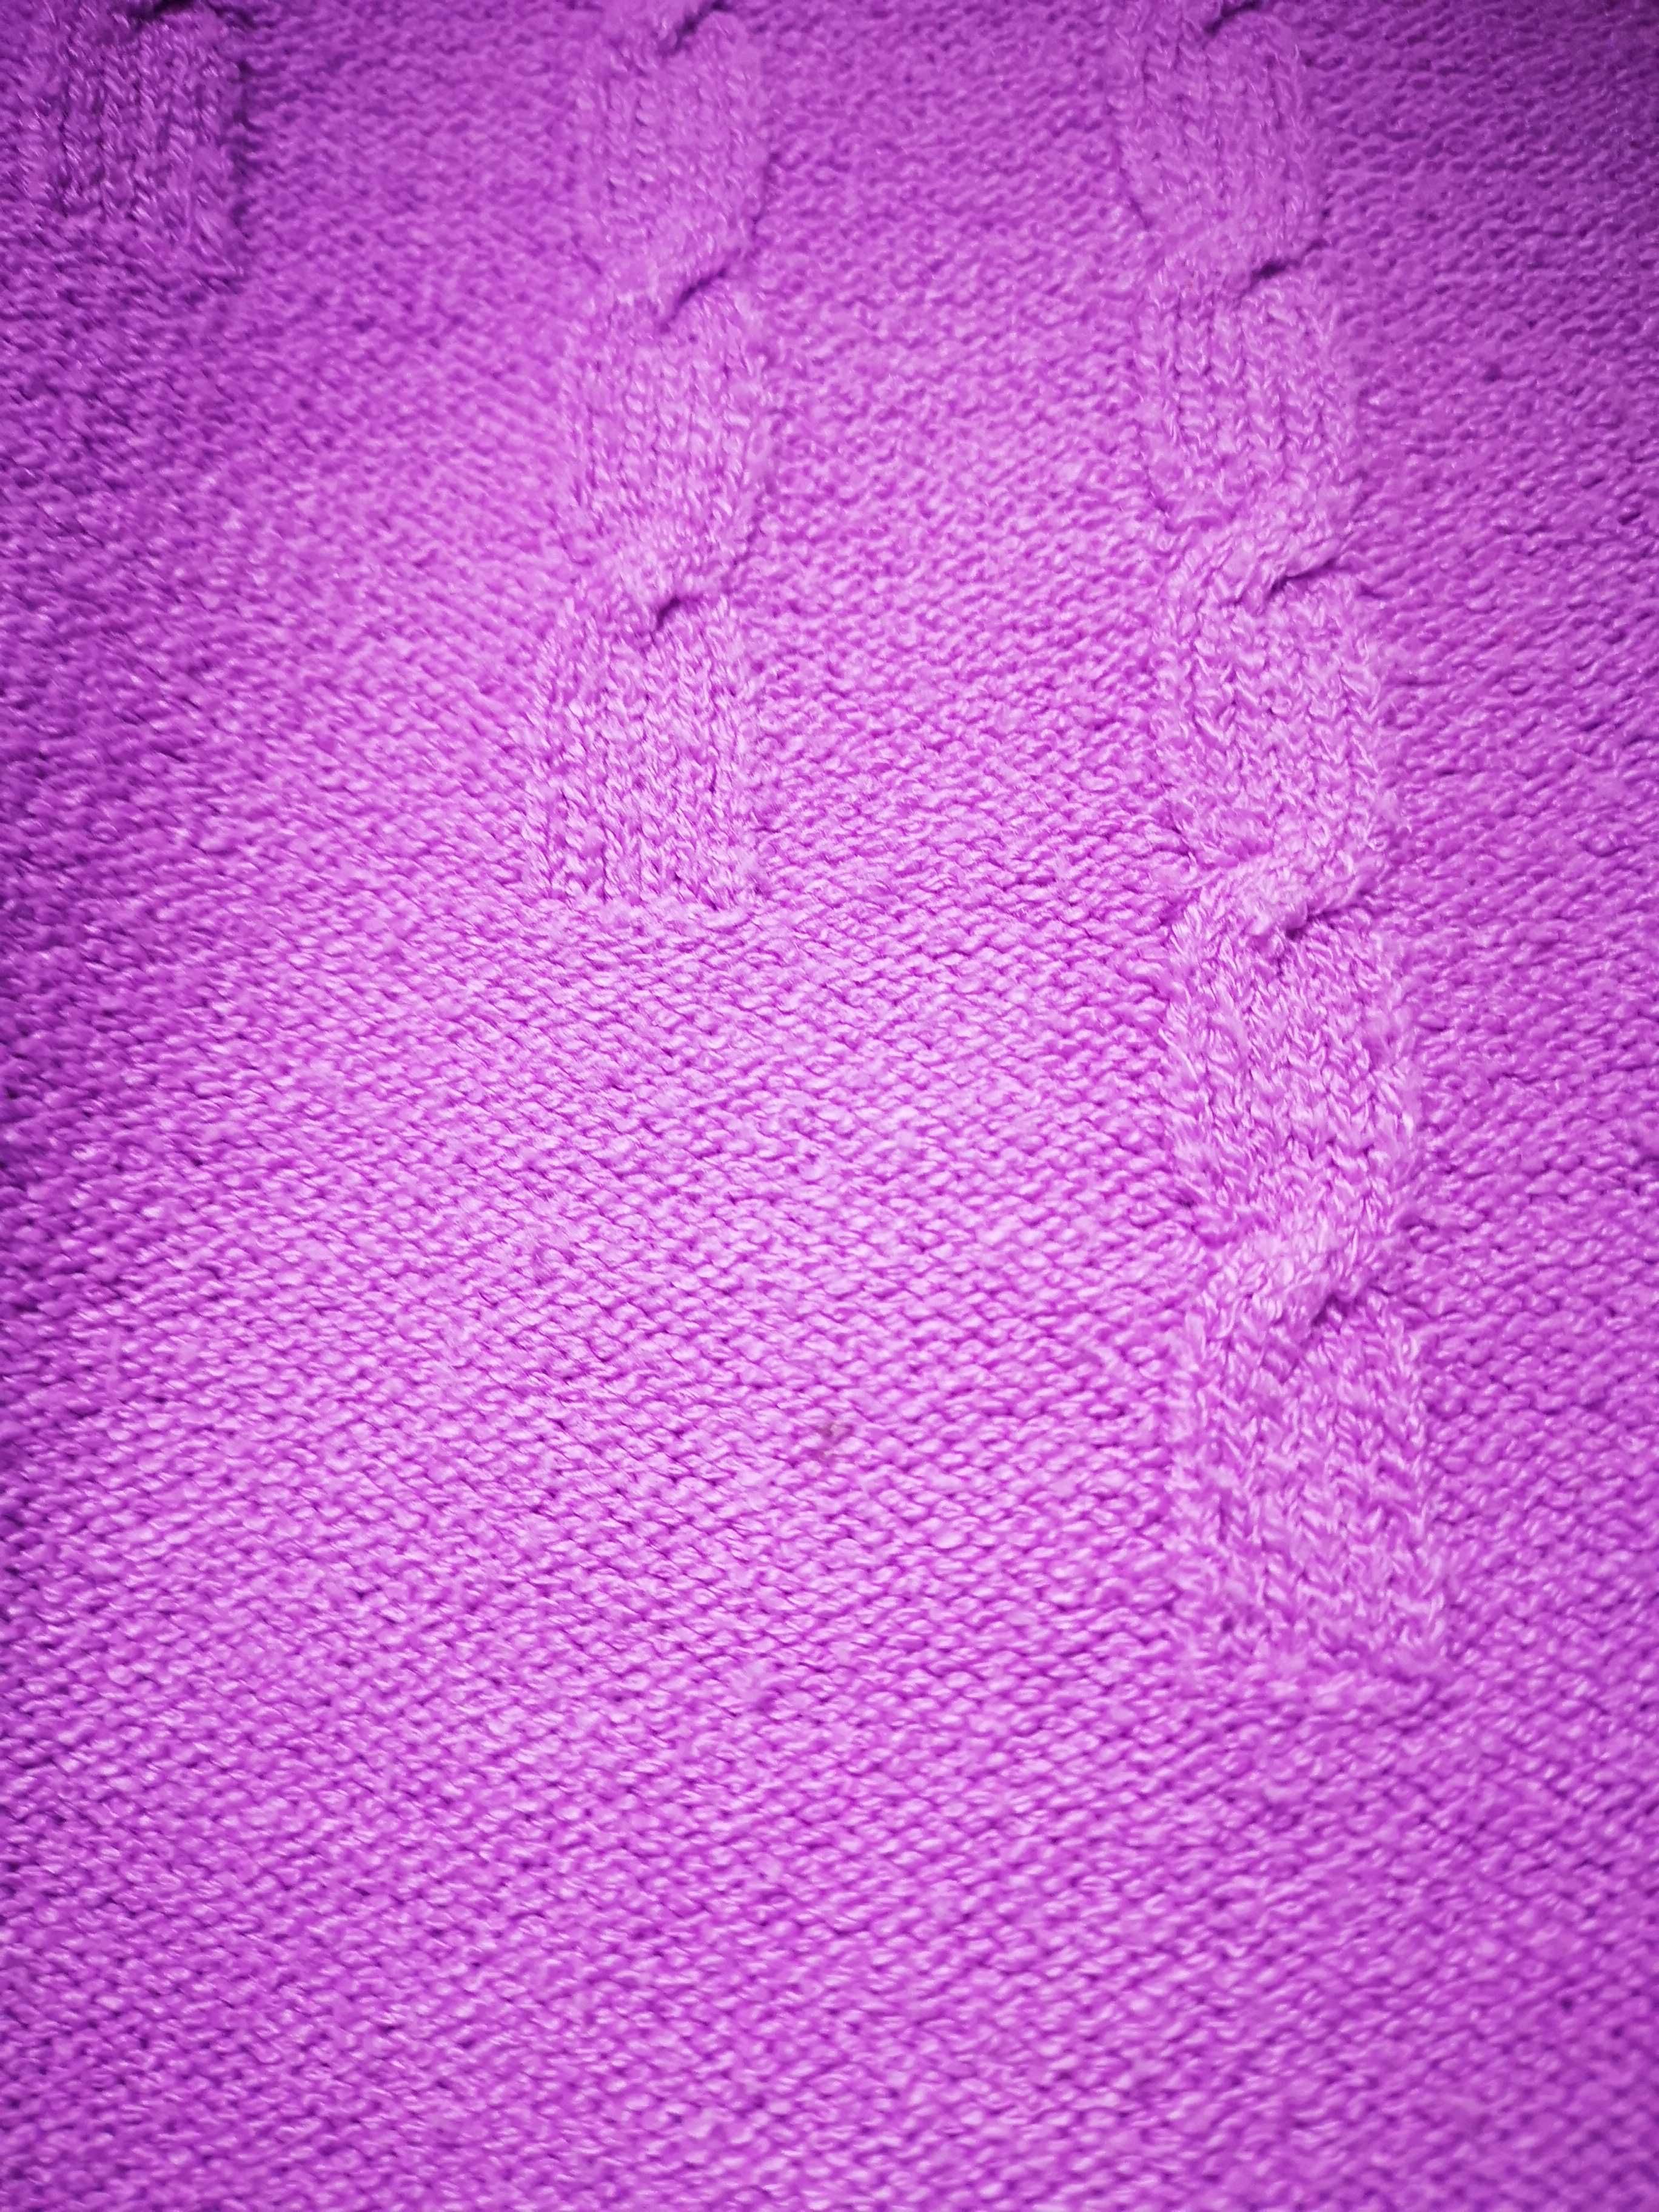 Camisola de malha lilás com cinto